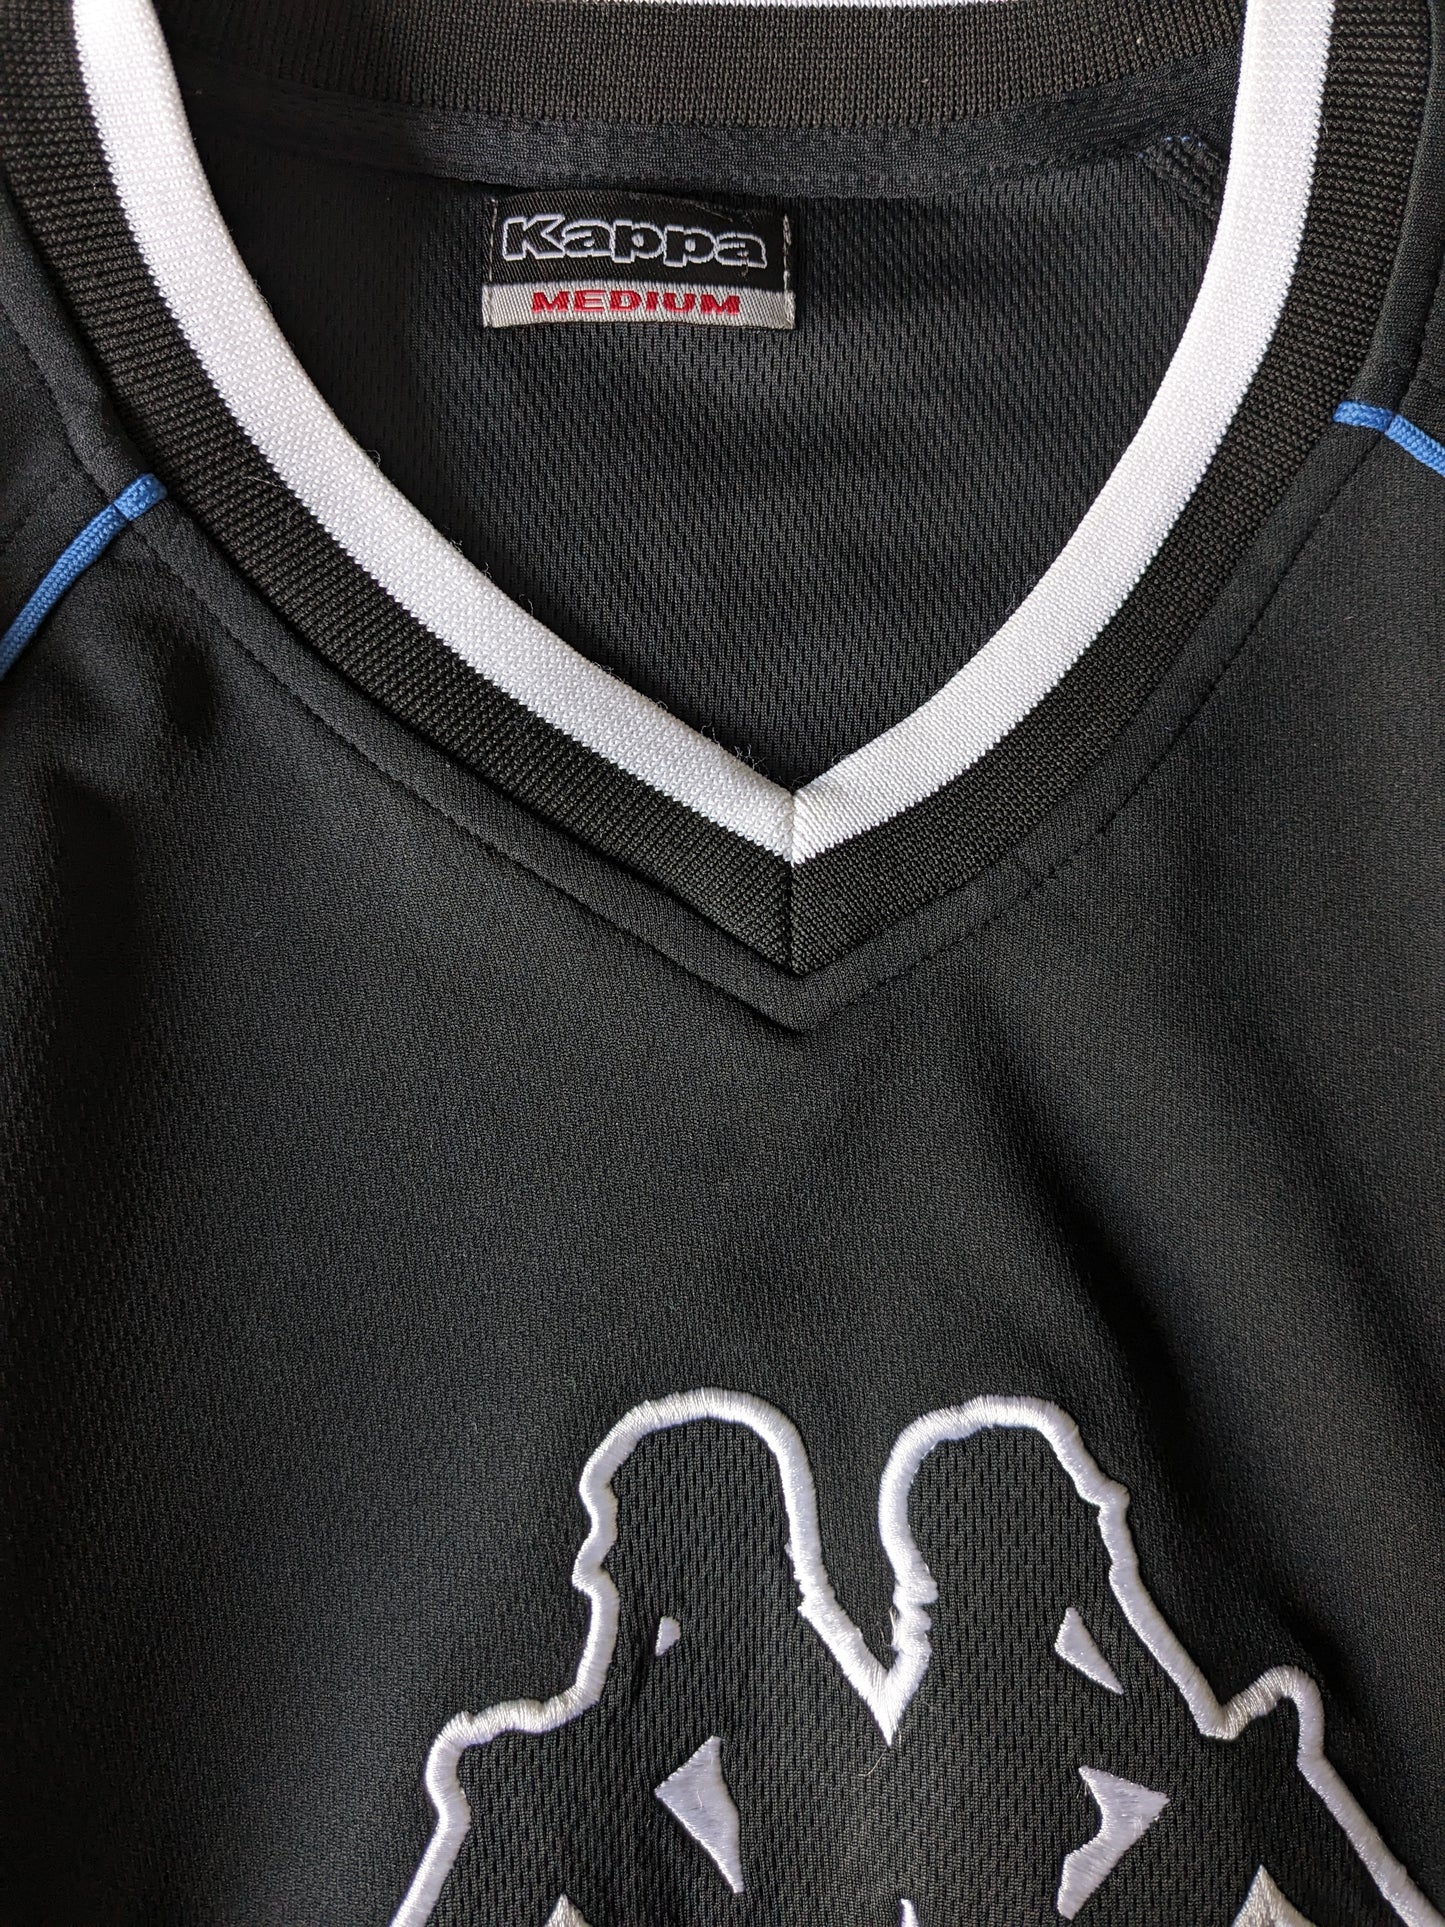 Camisa Vintage Kappa Sport con cuello en V. Color negro. Tamaño M / L.